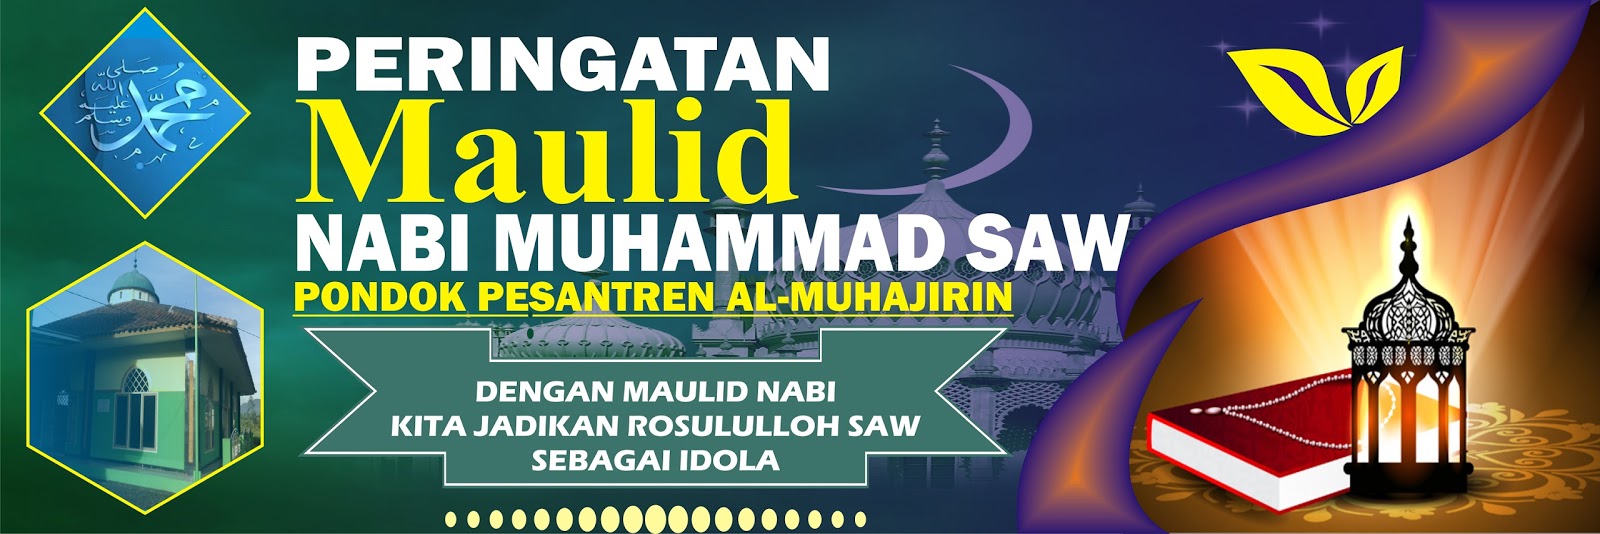 Download Contoh Spanduk Maulid Nabi.cdr  KARYAKU